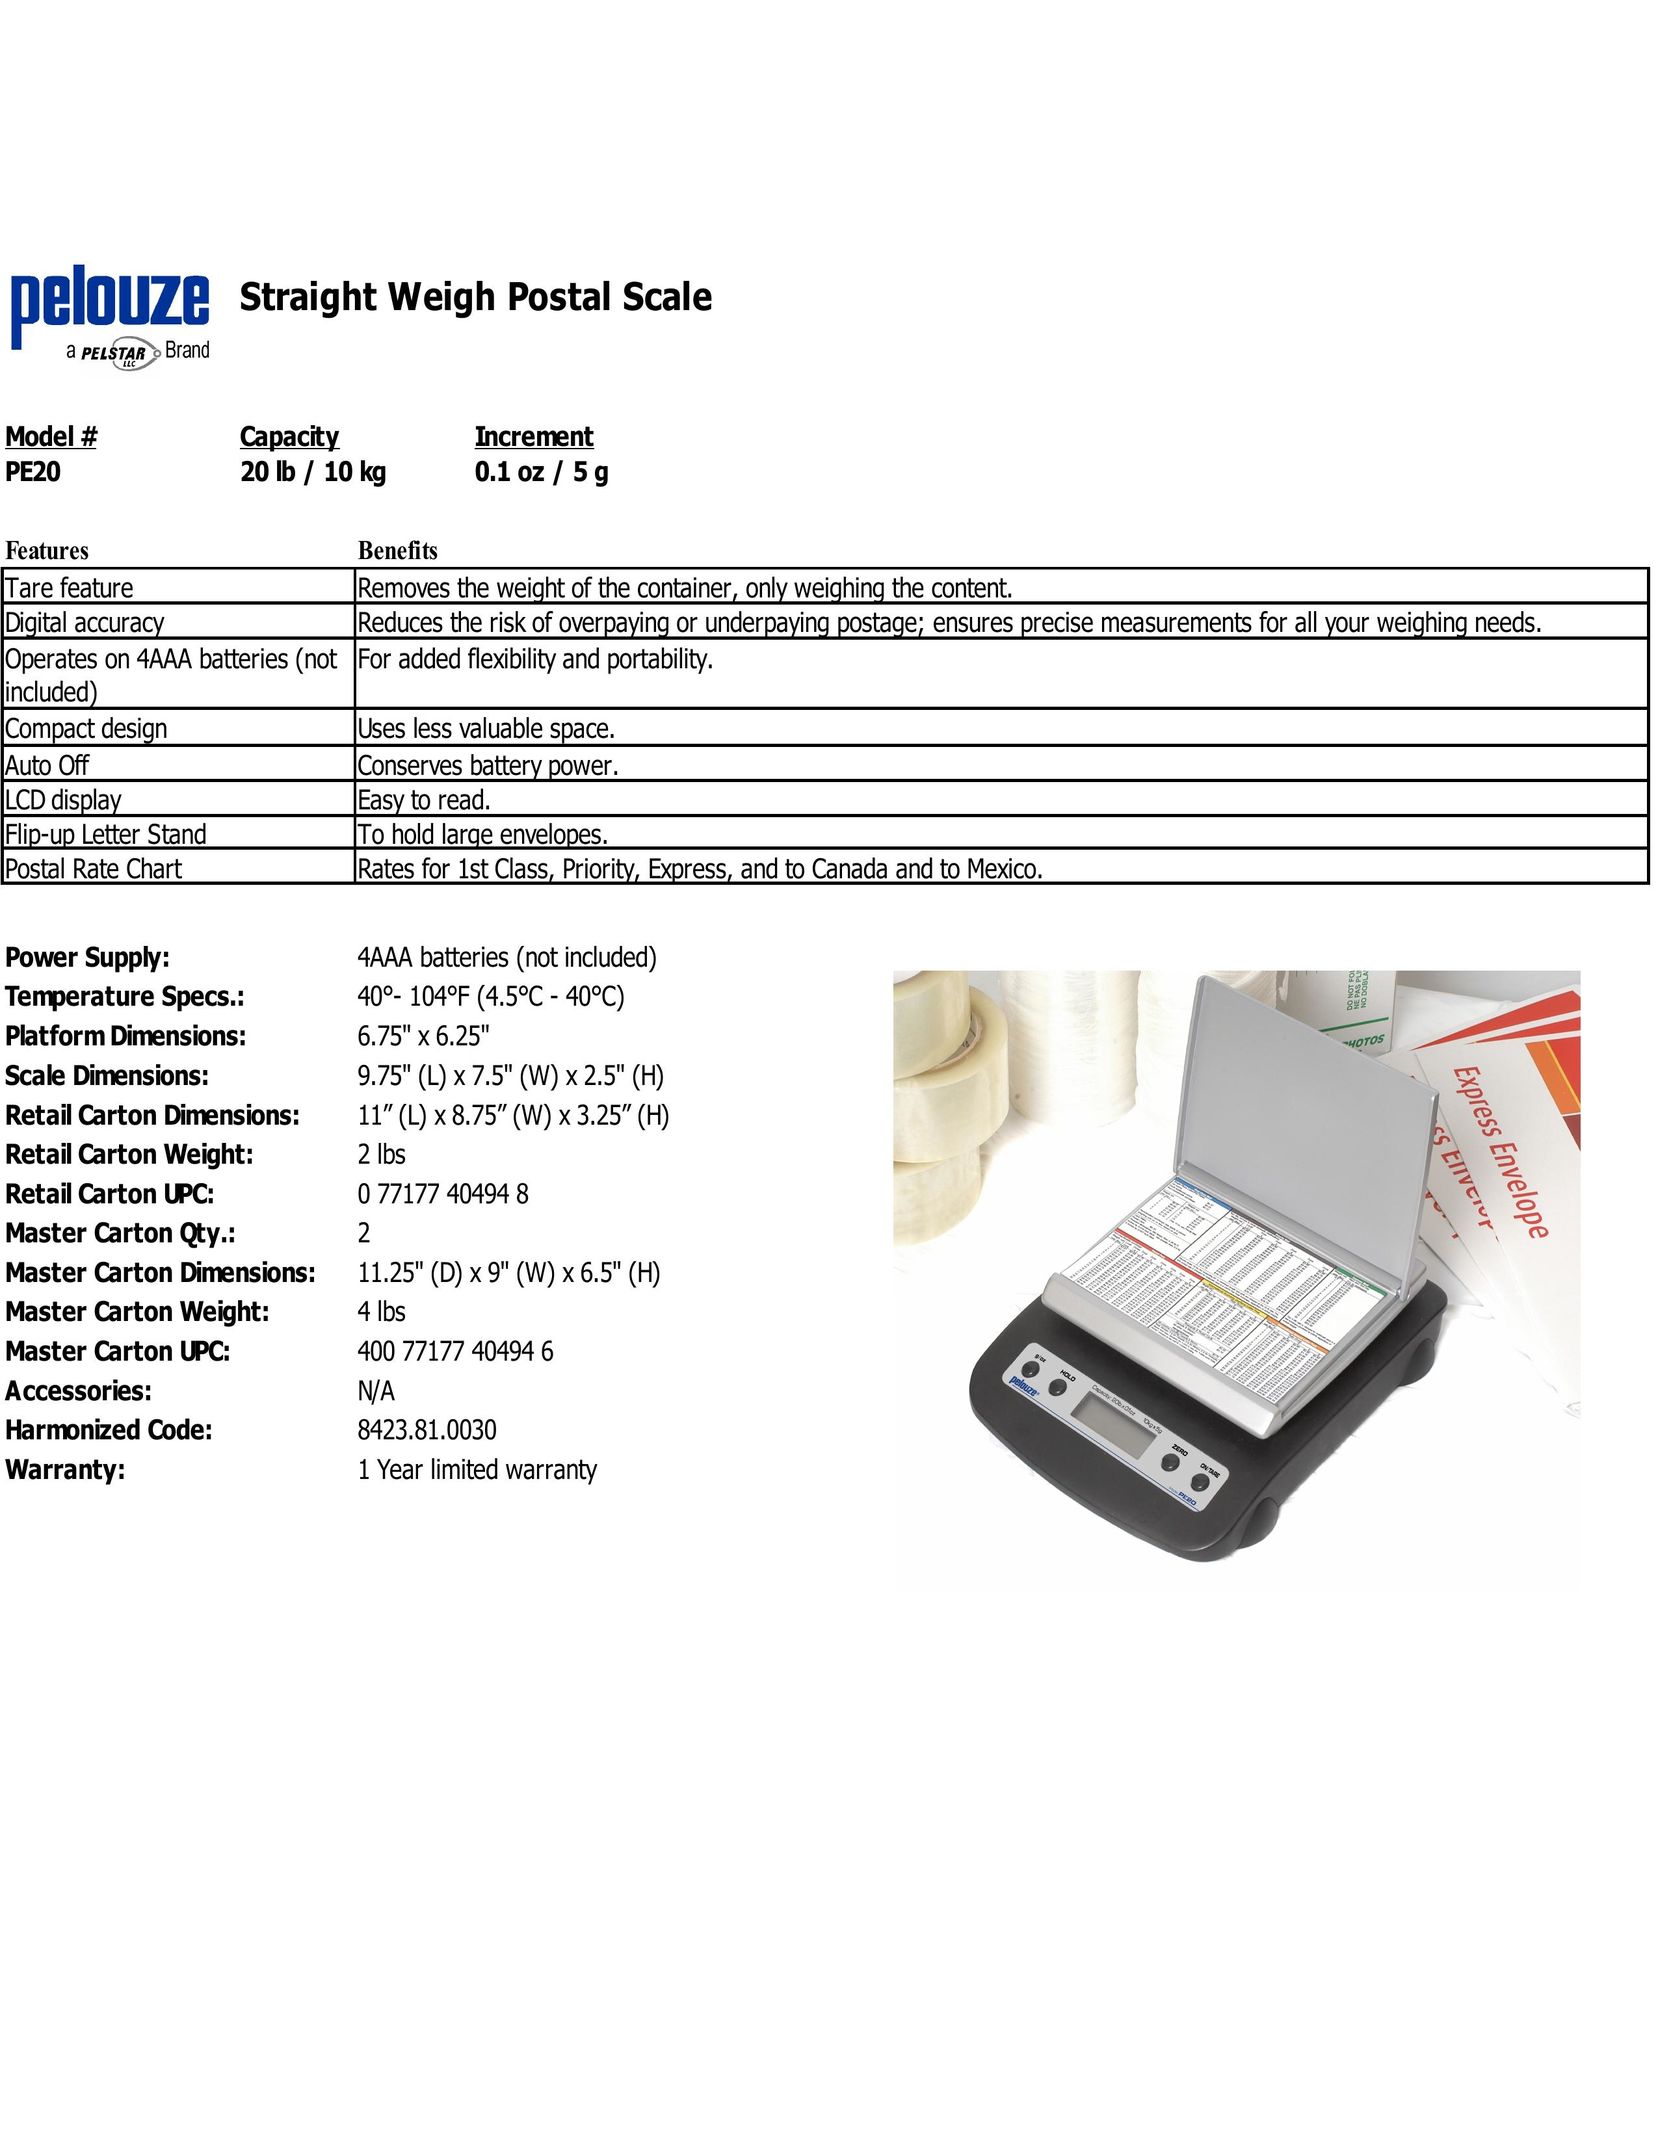 Dymo PE20 Postal Equipment User Manual